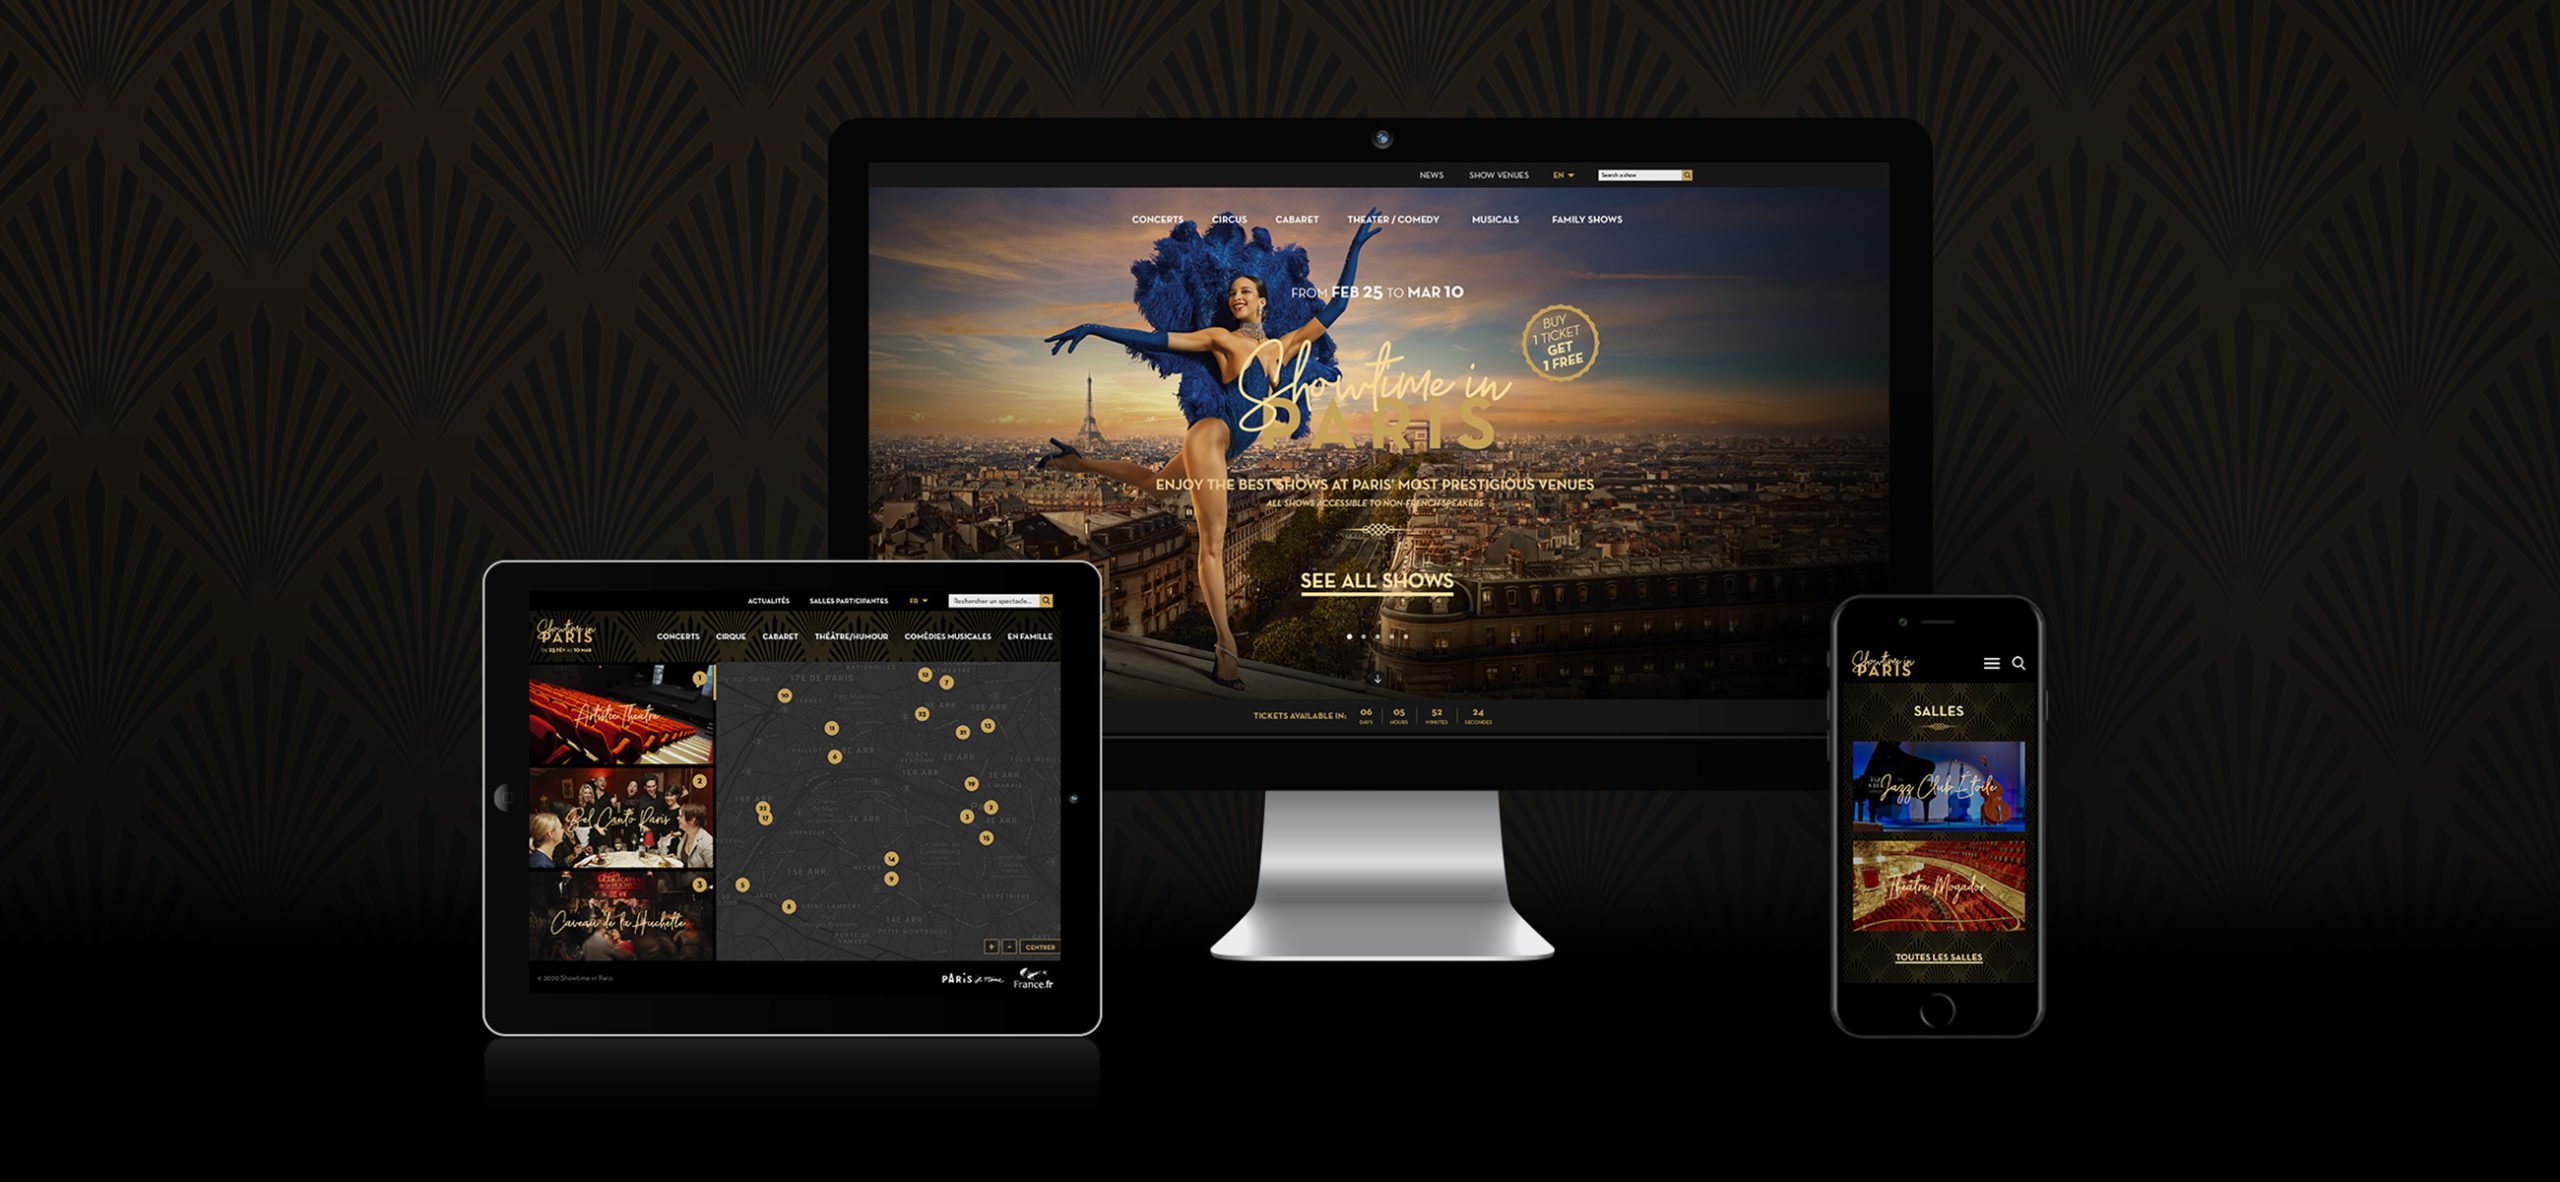 Mockup iMac tablette et smartphone digital